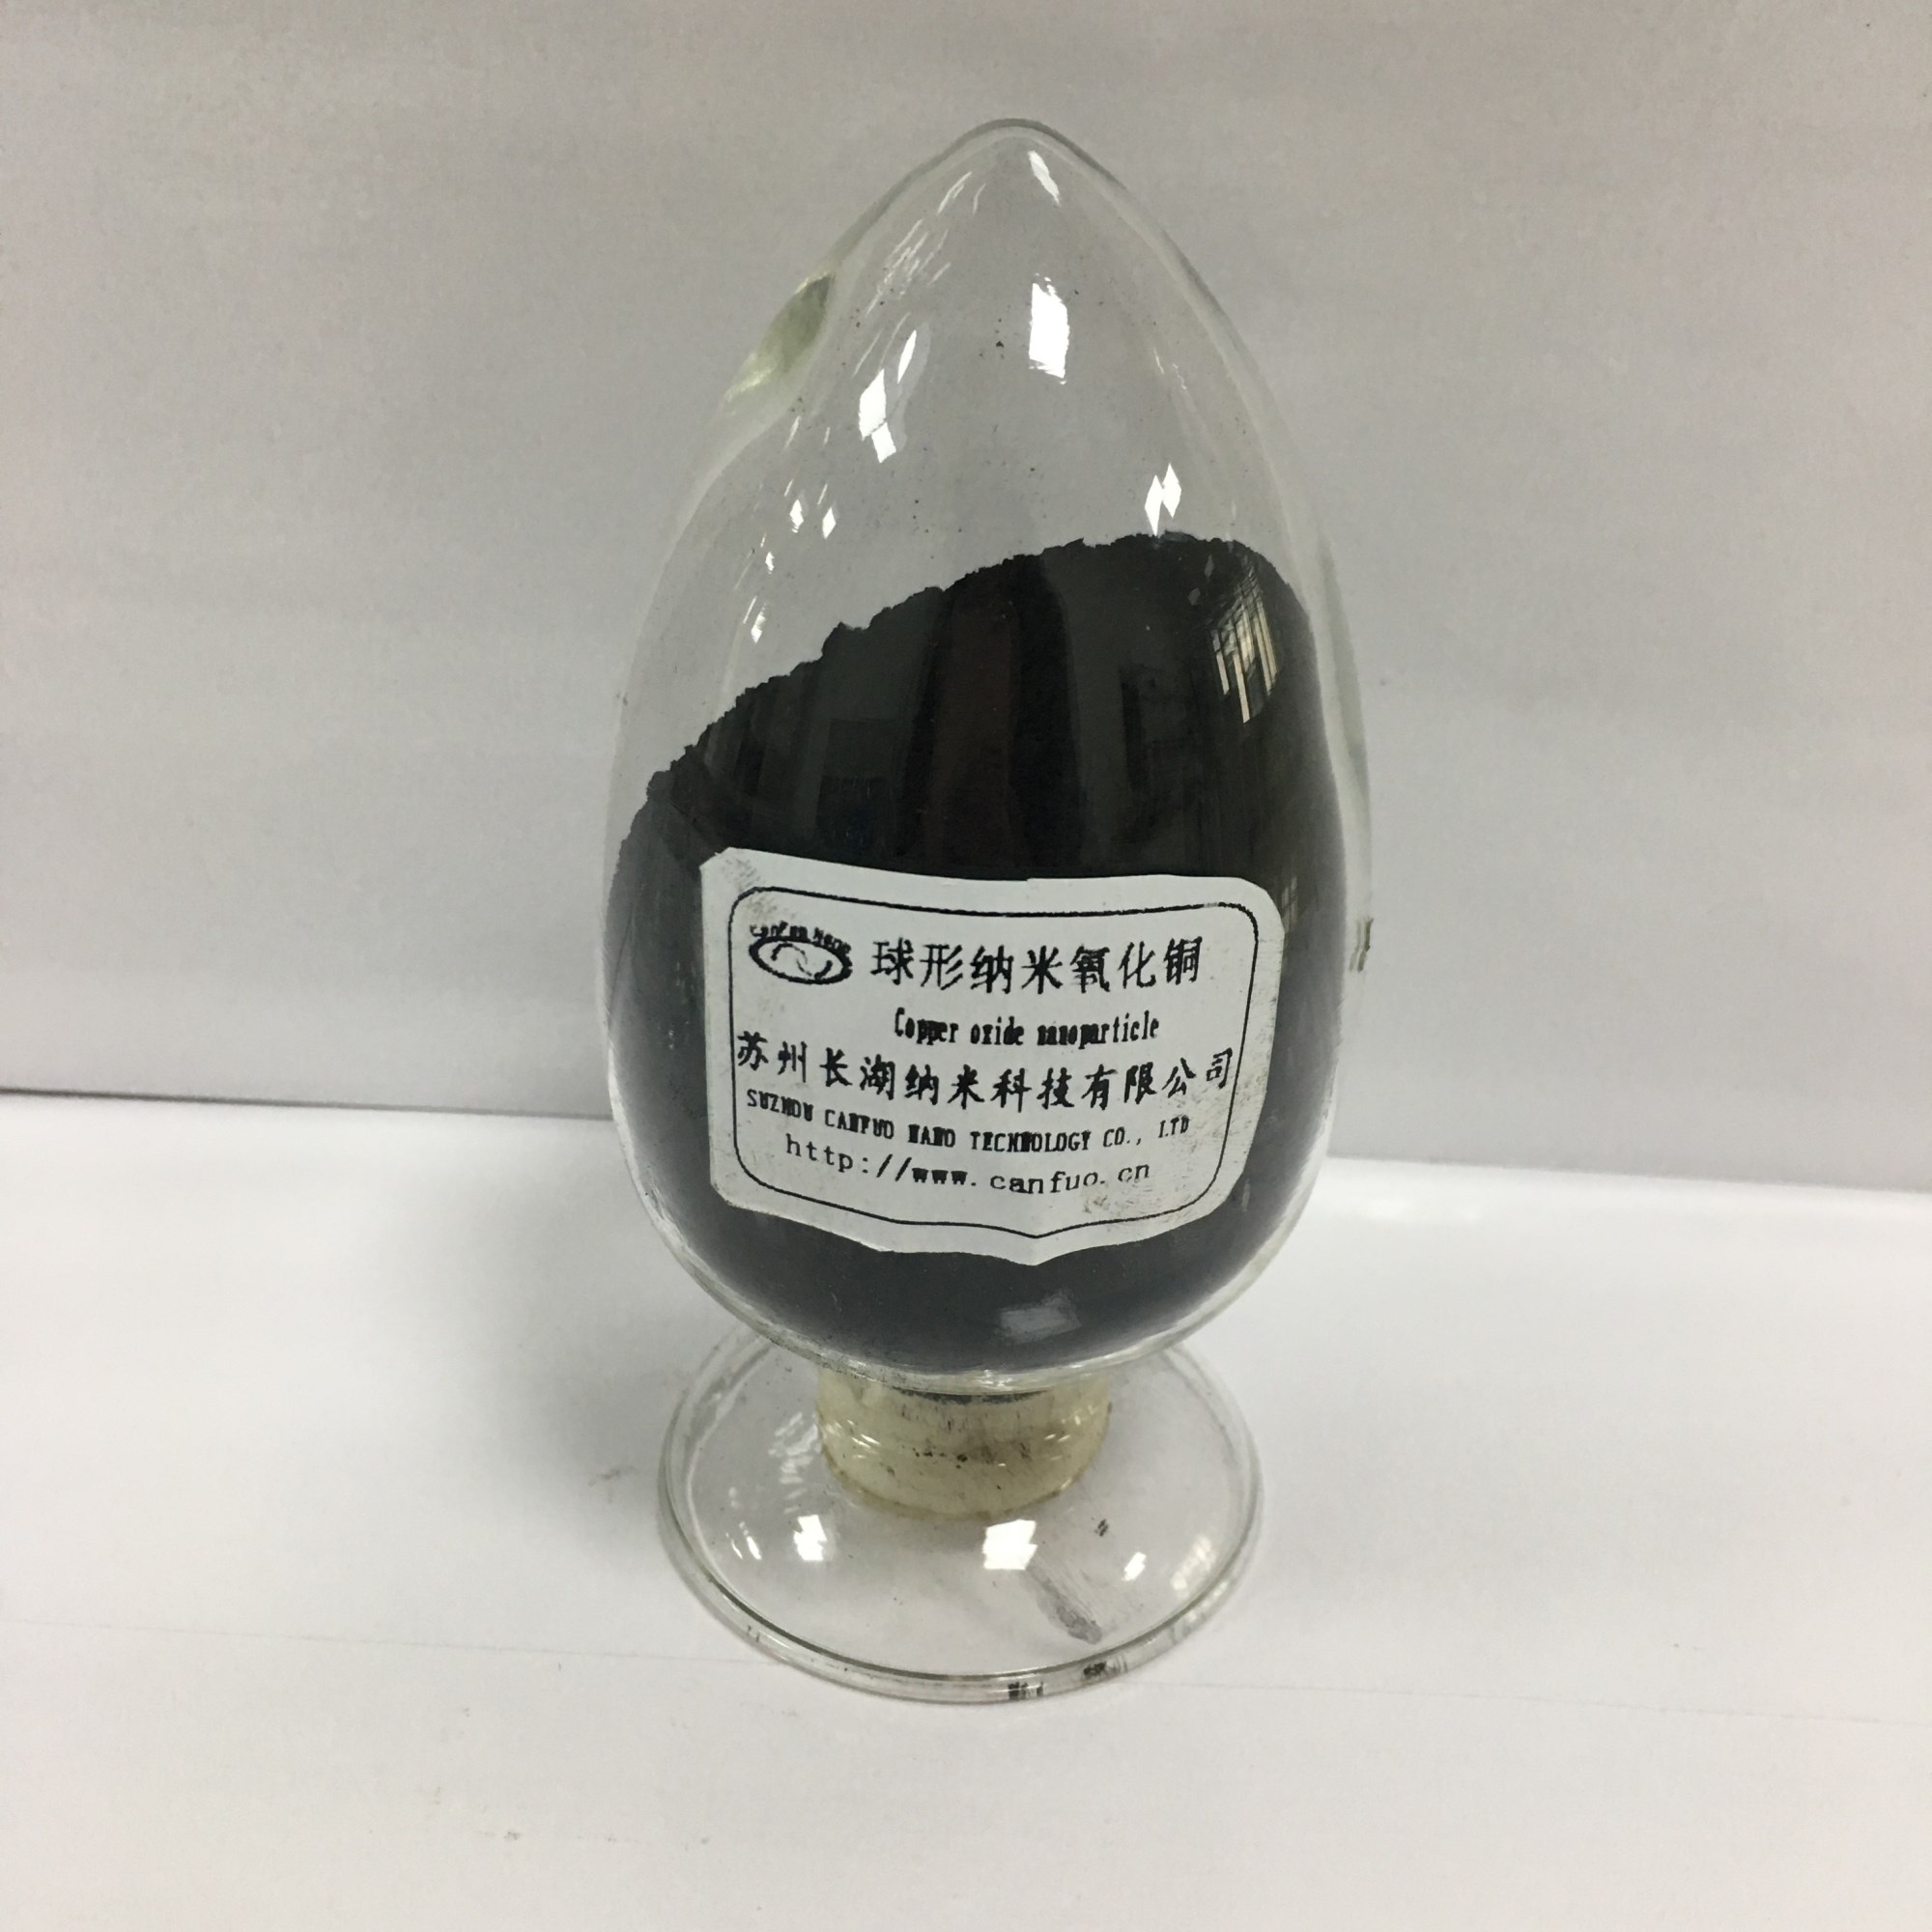 纳米碱式碳酸铜Nano Cupric Carbonate Basic；产品规格： 直径20 40nm；长度100 200nm